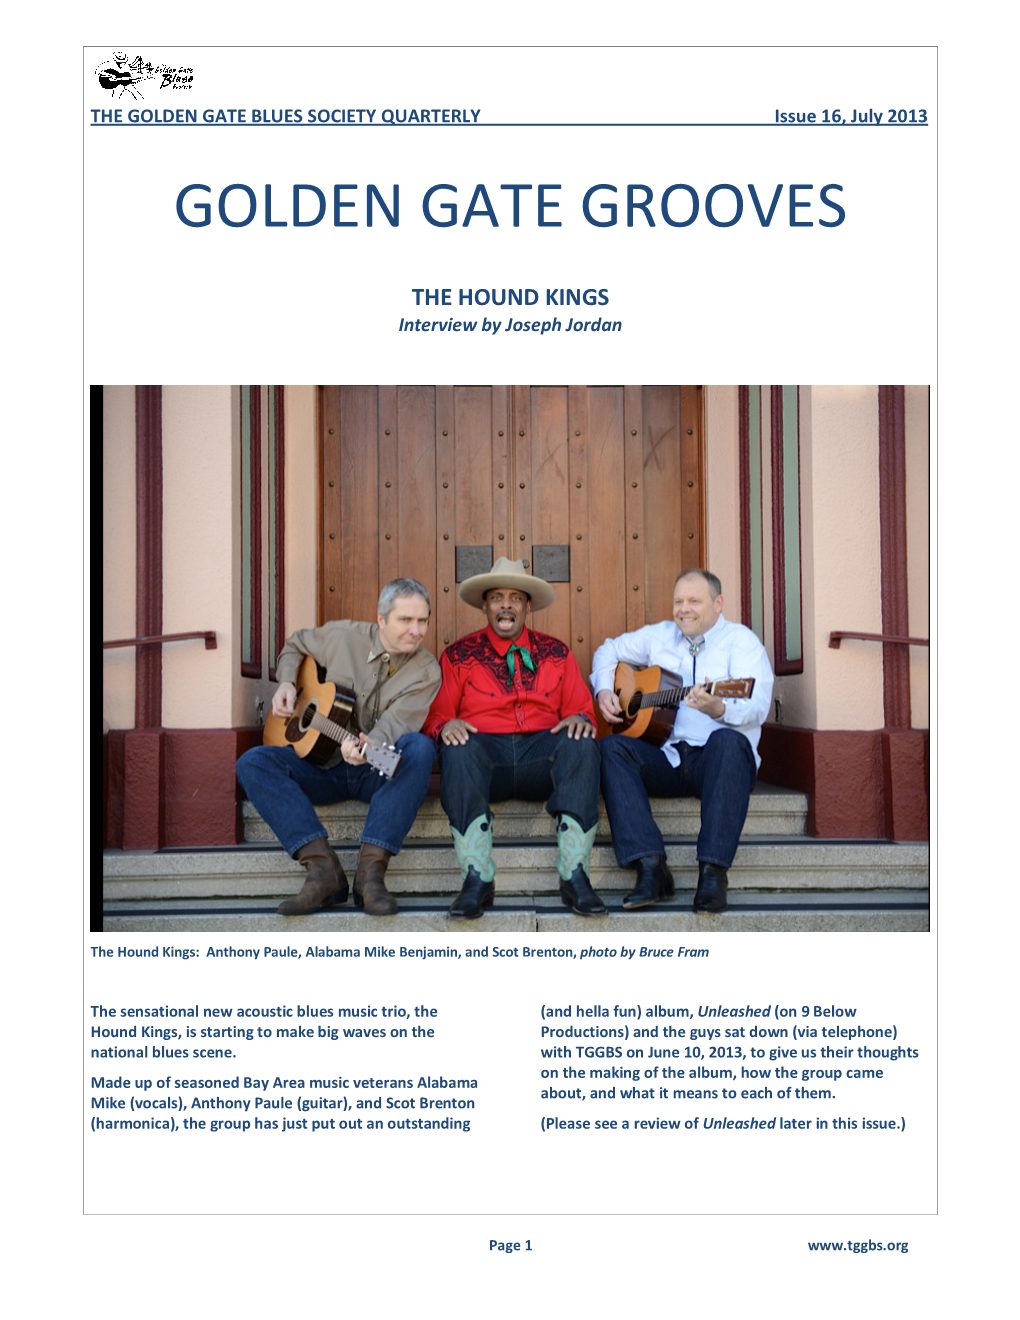 Golden Gate Grooves